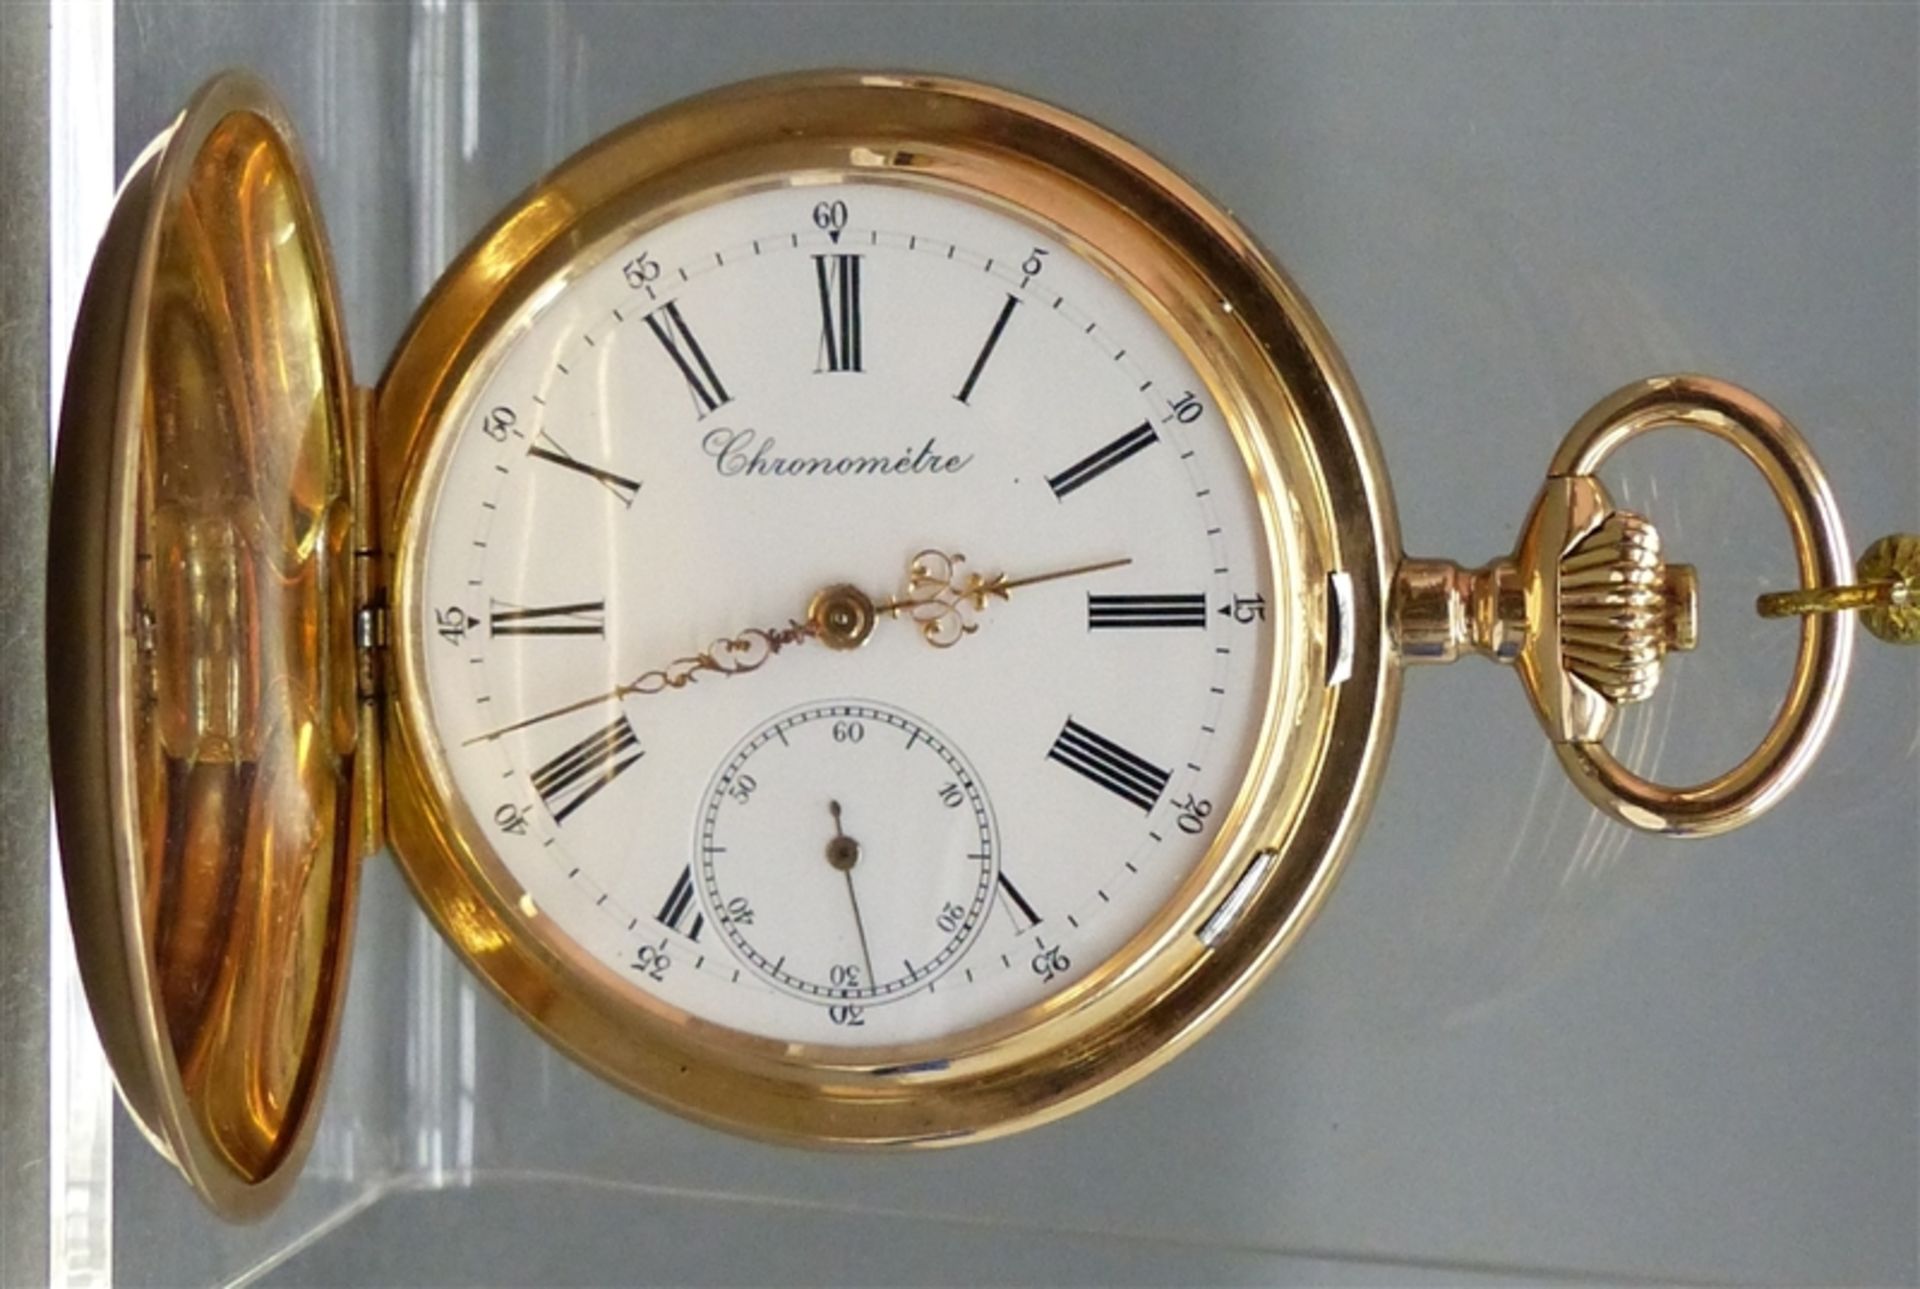 Sprungdeckeltaschenuhr, um 1900 18 kt. Gelbgold, "Chronometre", Kronenaufzug,